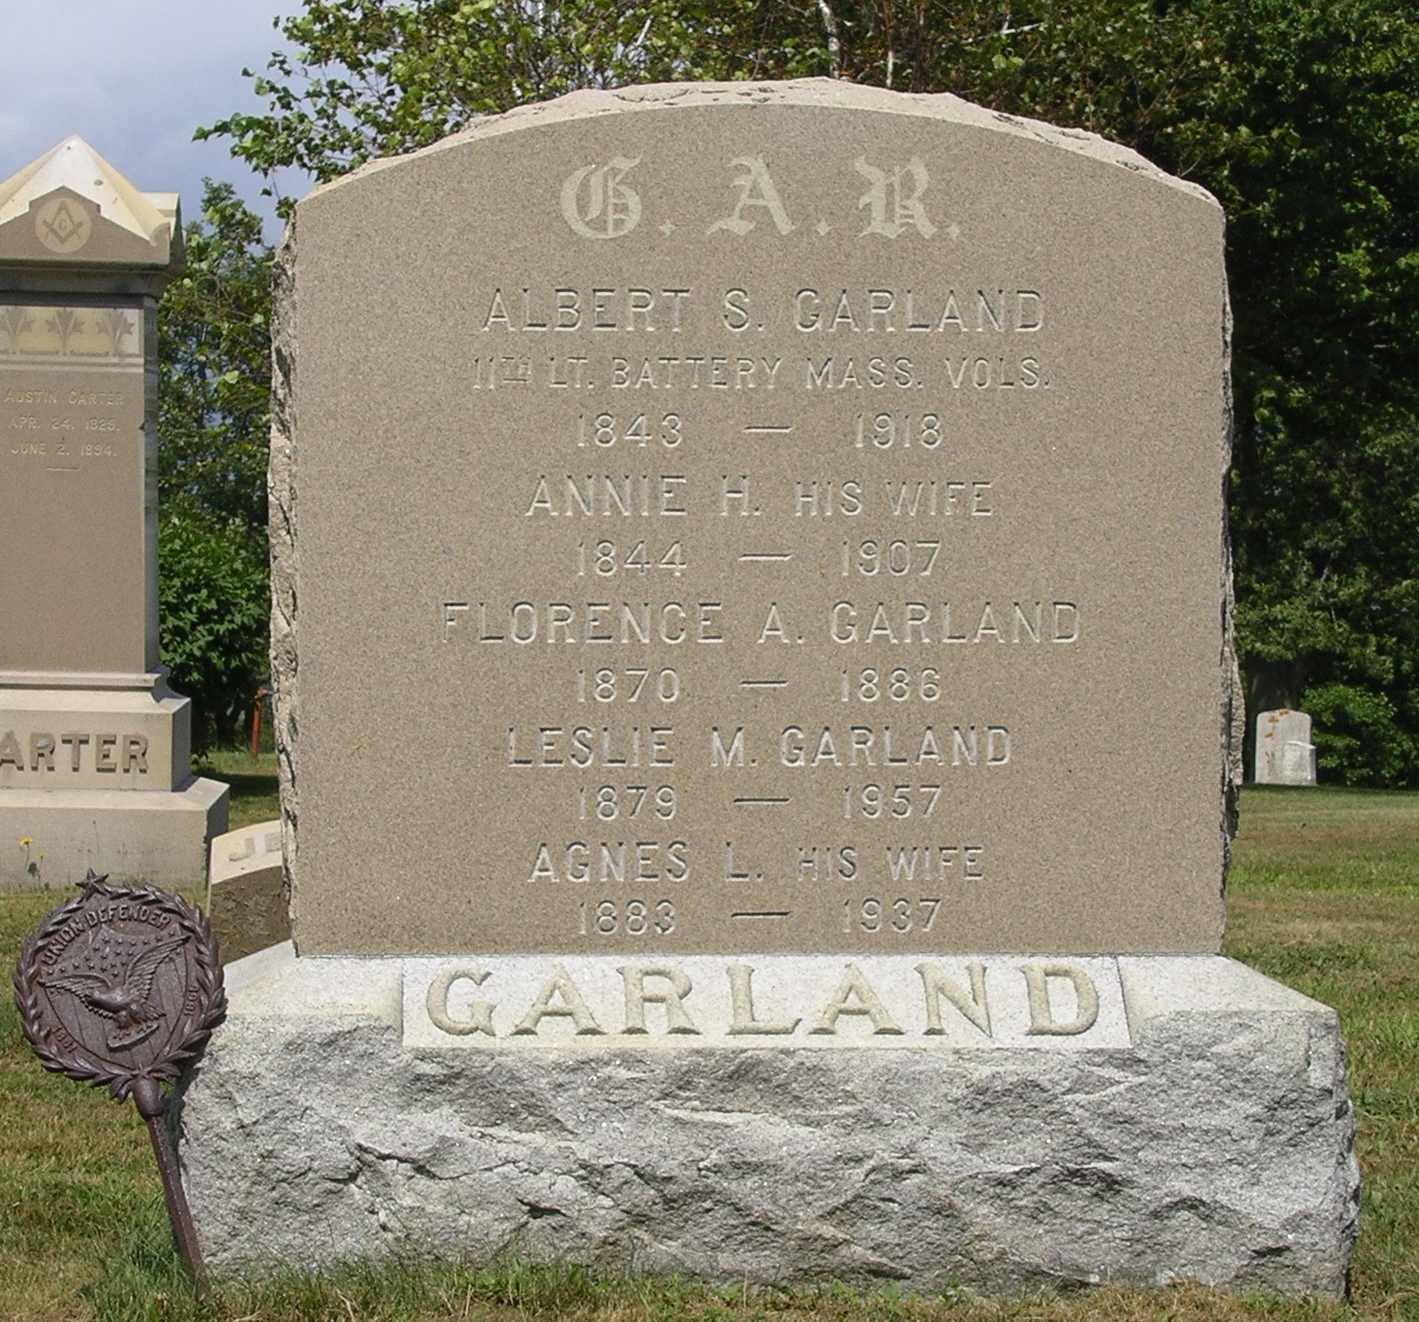 Albert and Annie Garland  gravestone, Ipswich MA